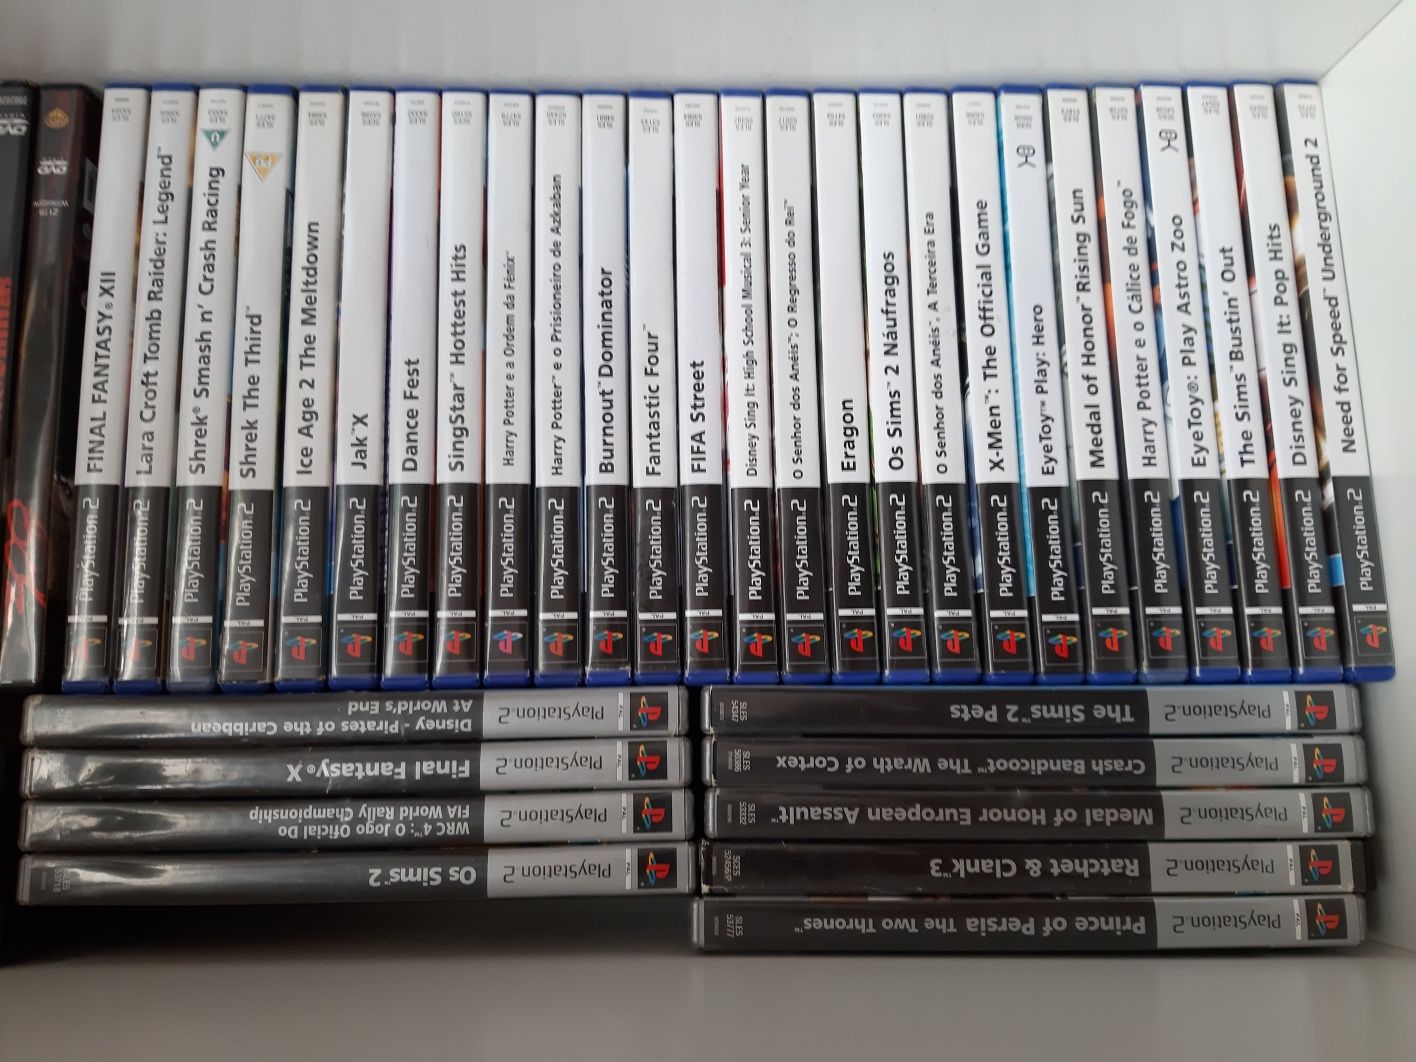 Jogos PlayStation 2